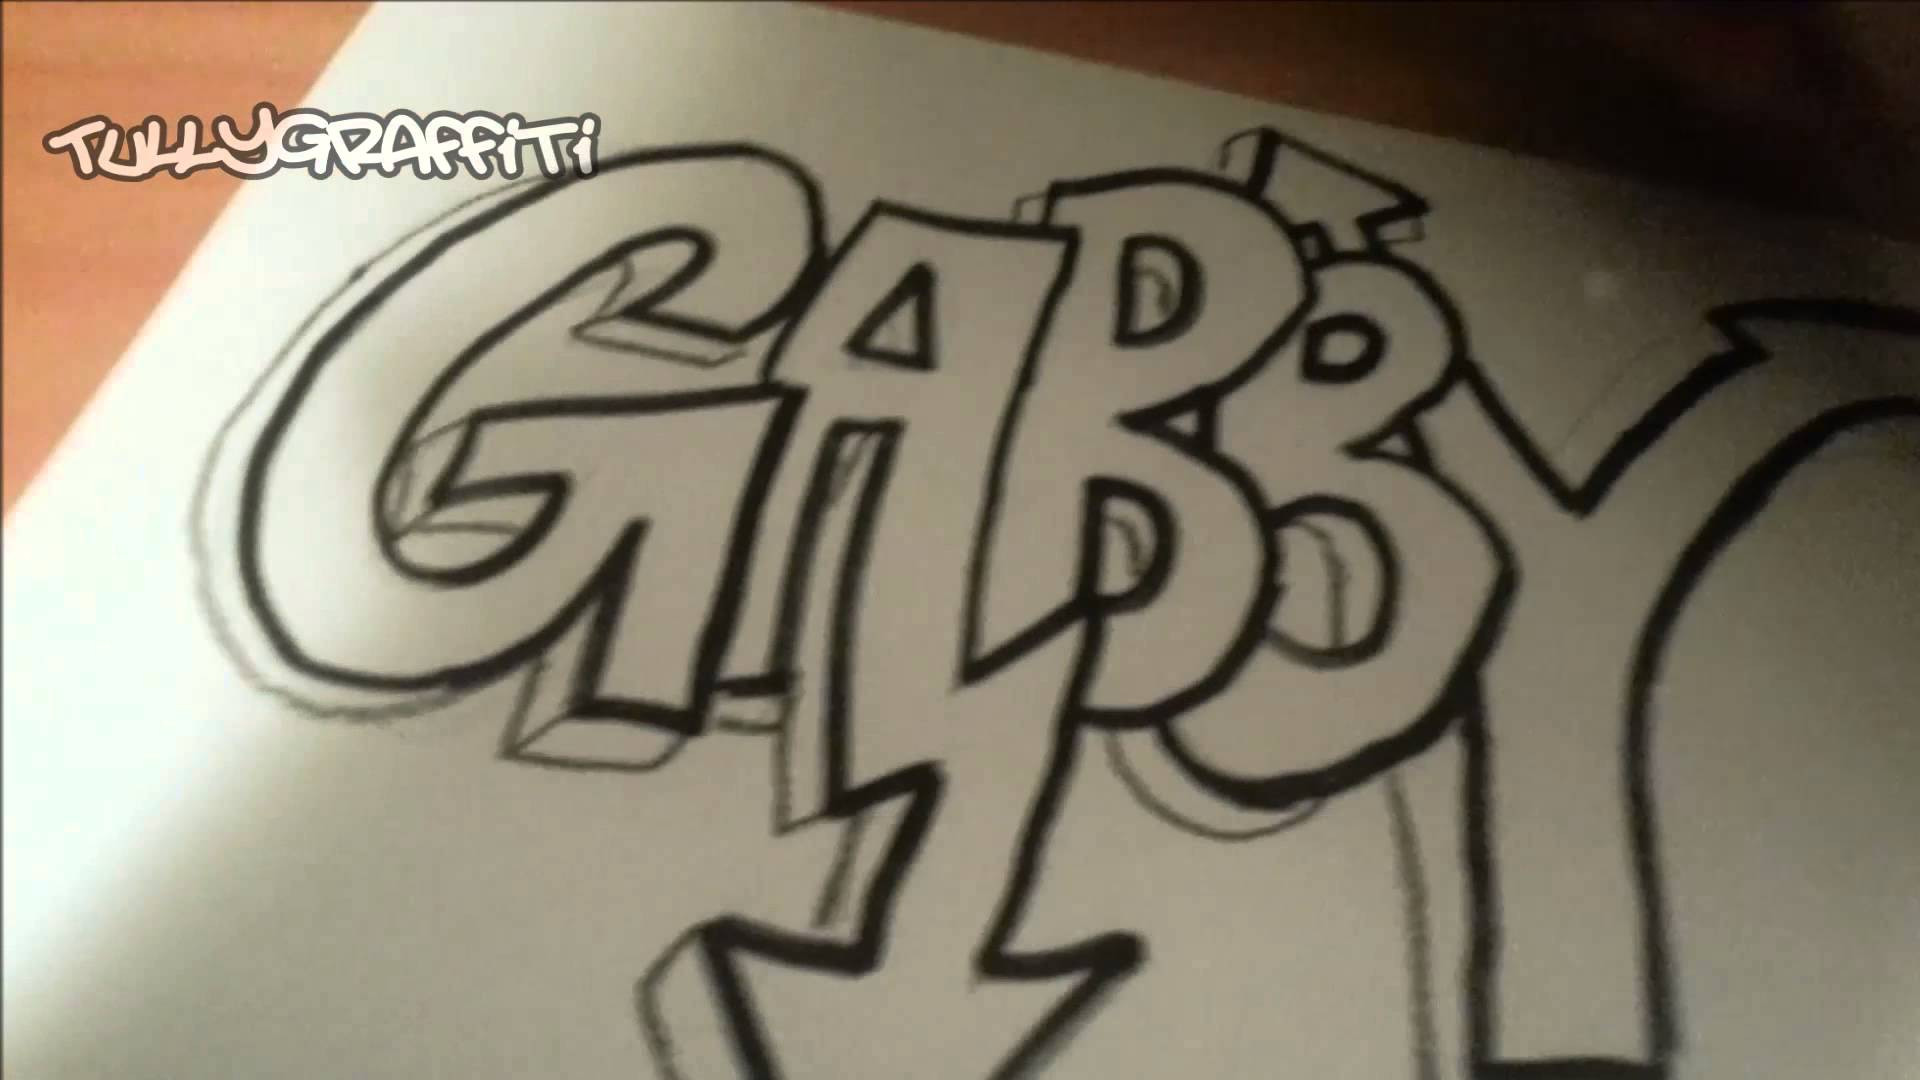 1920x1080 ... Bubbles Te Amo Graffiti Graffiti Art Request – "gabby" [Speed Draw] ...